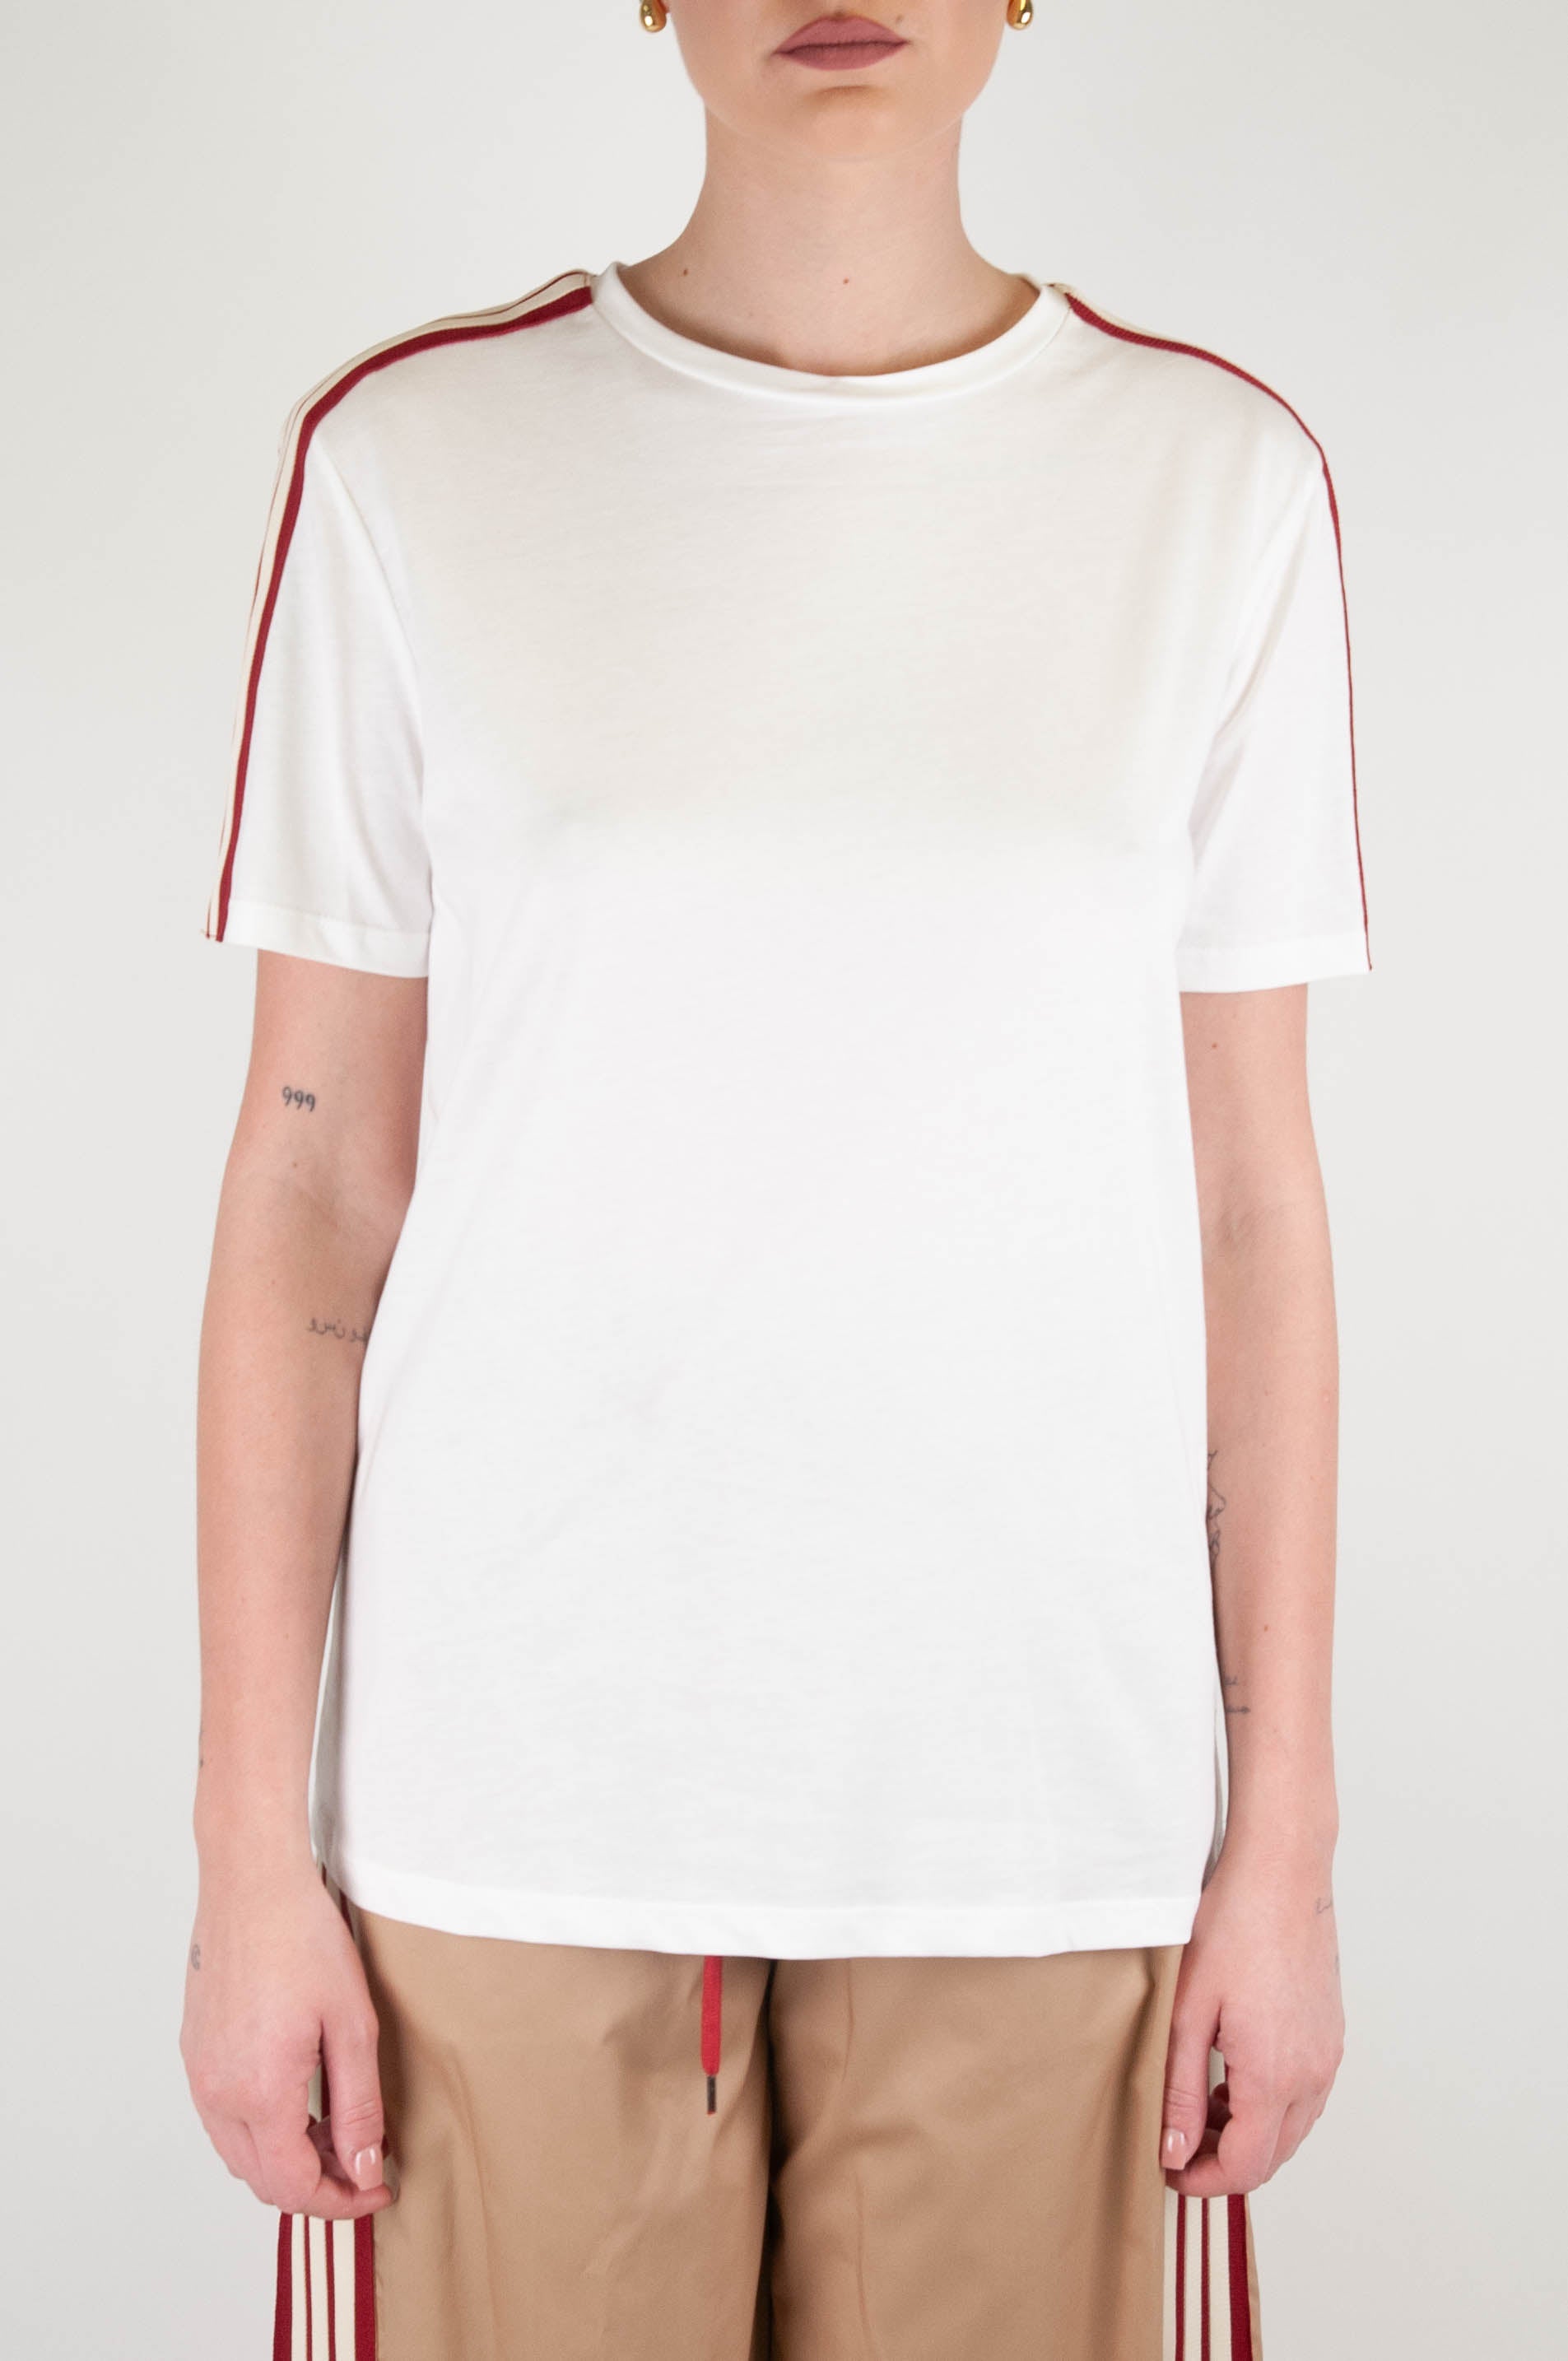 Tensione in - T-shirt in cotone con banda laterale a contrasto